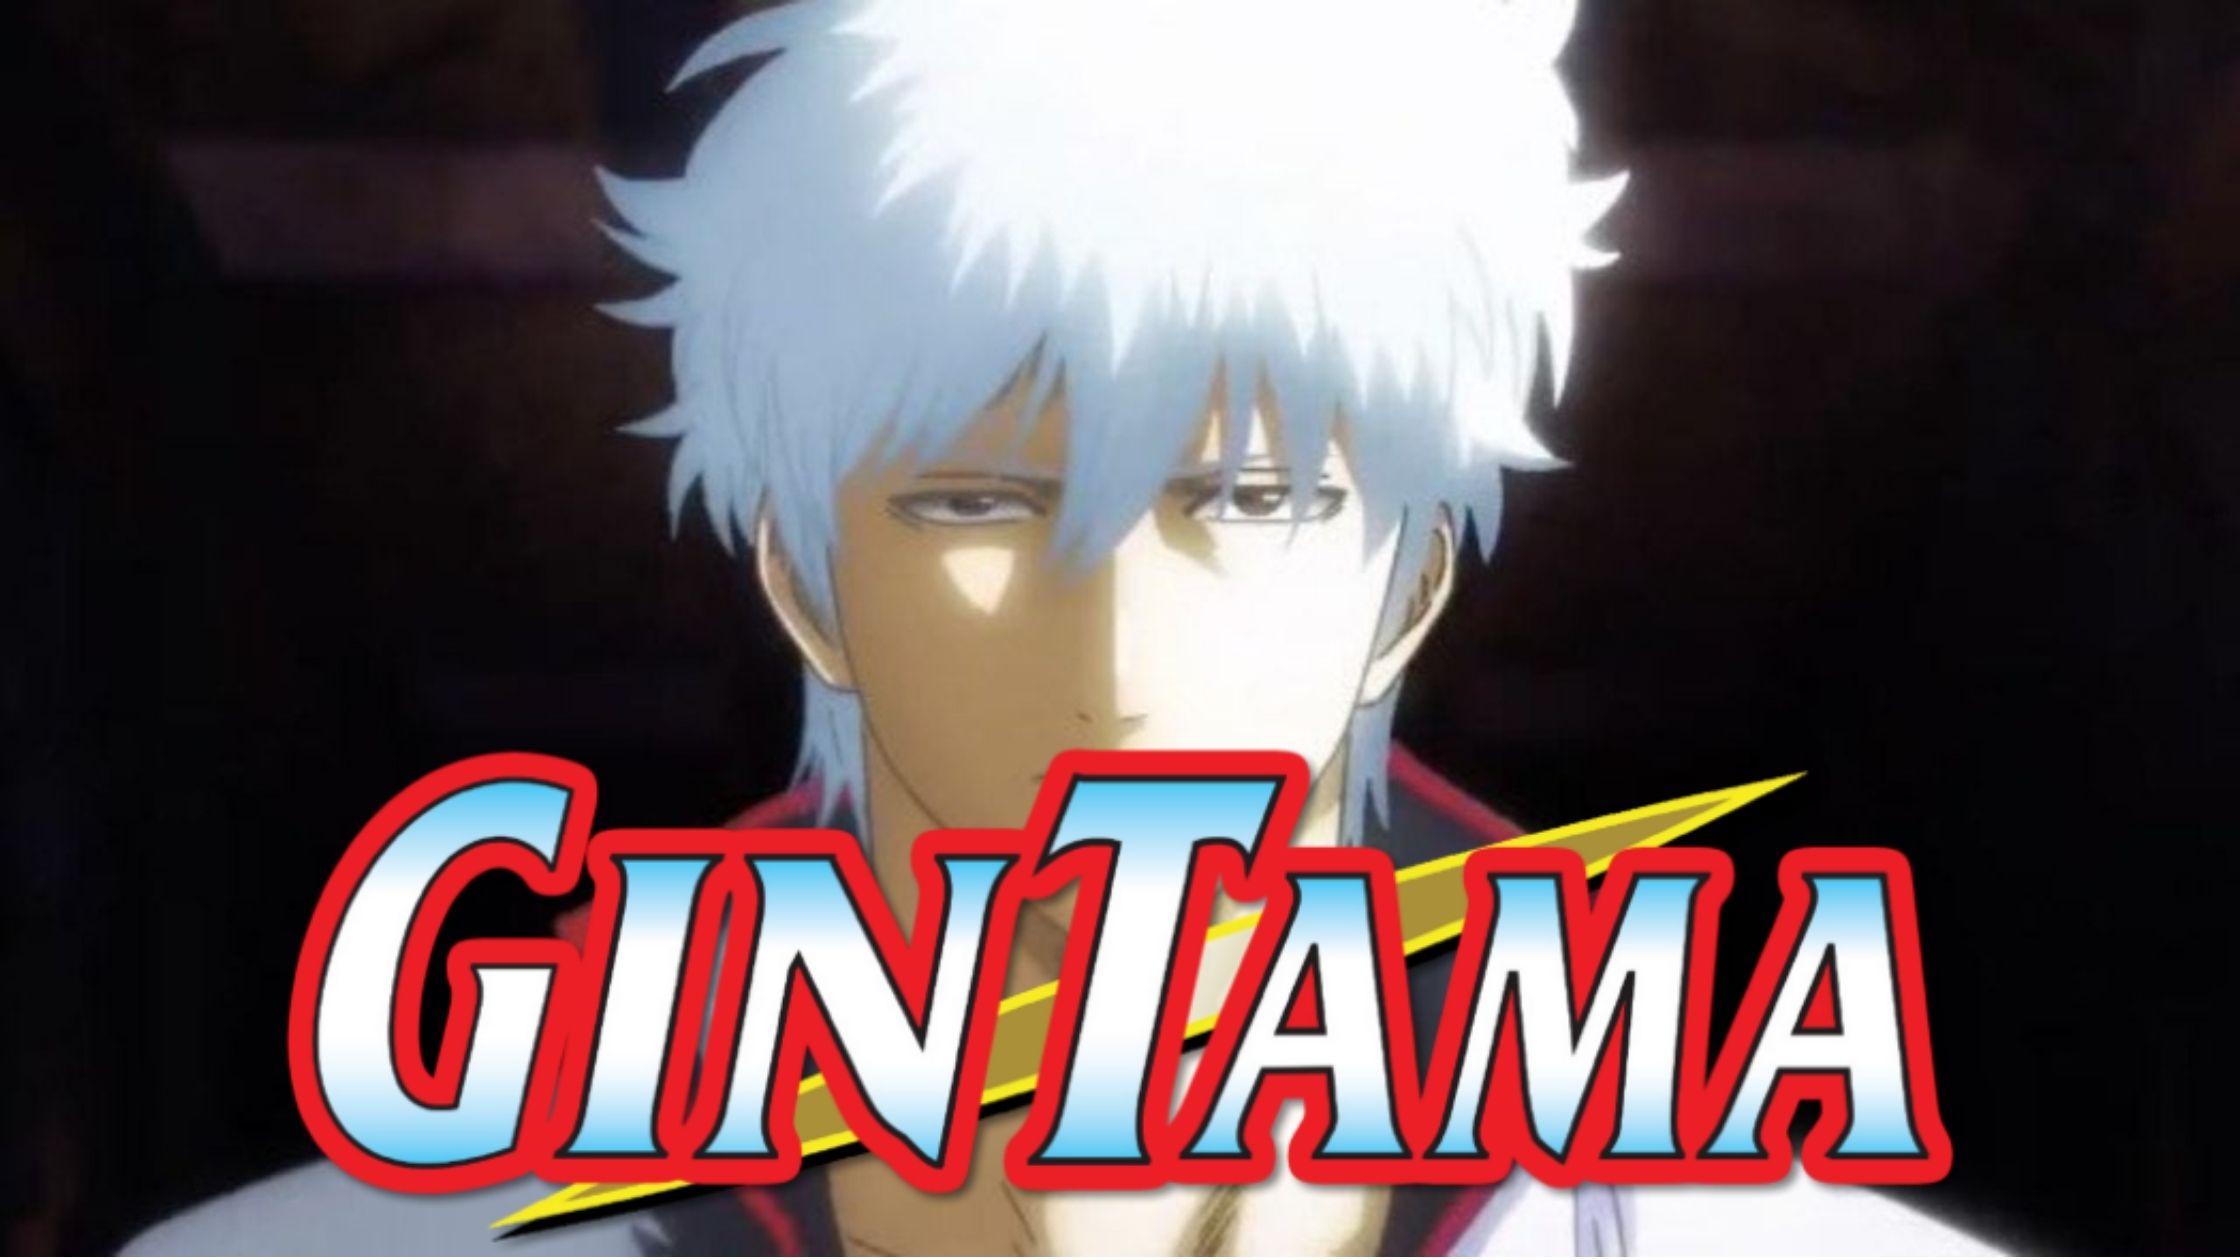 gintama season 1 episode 1 download